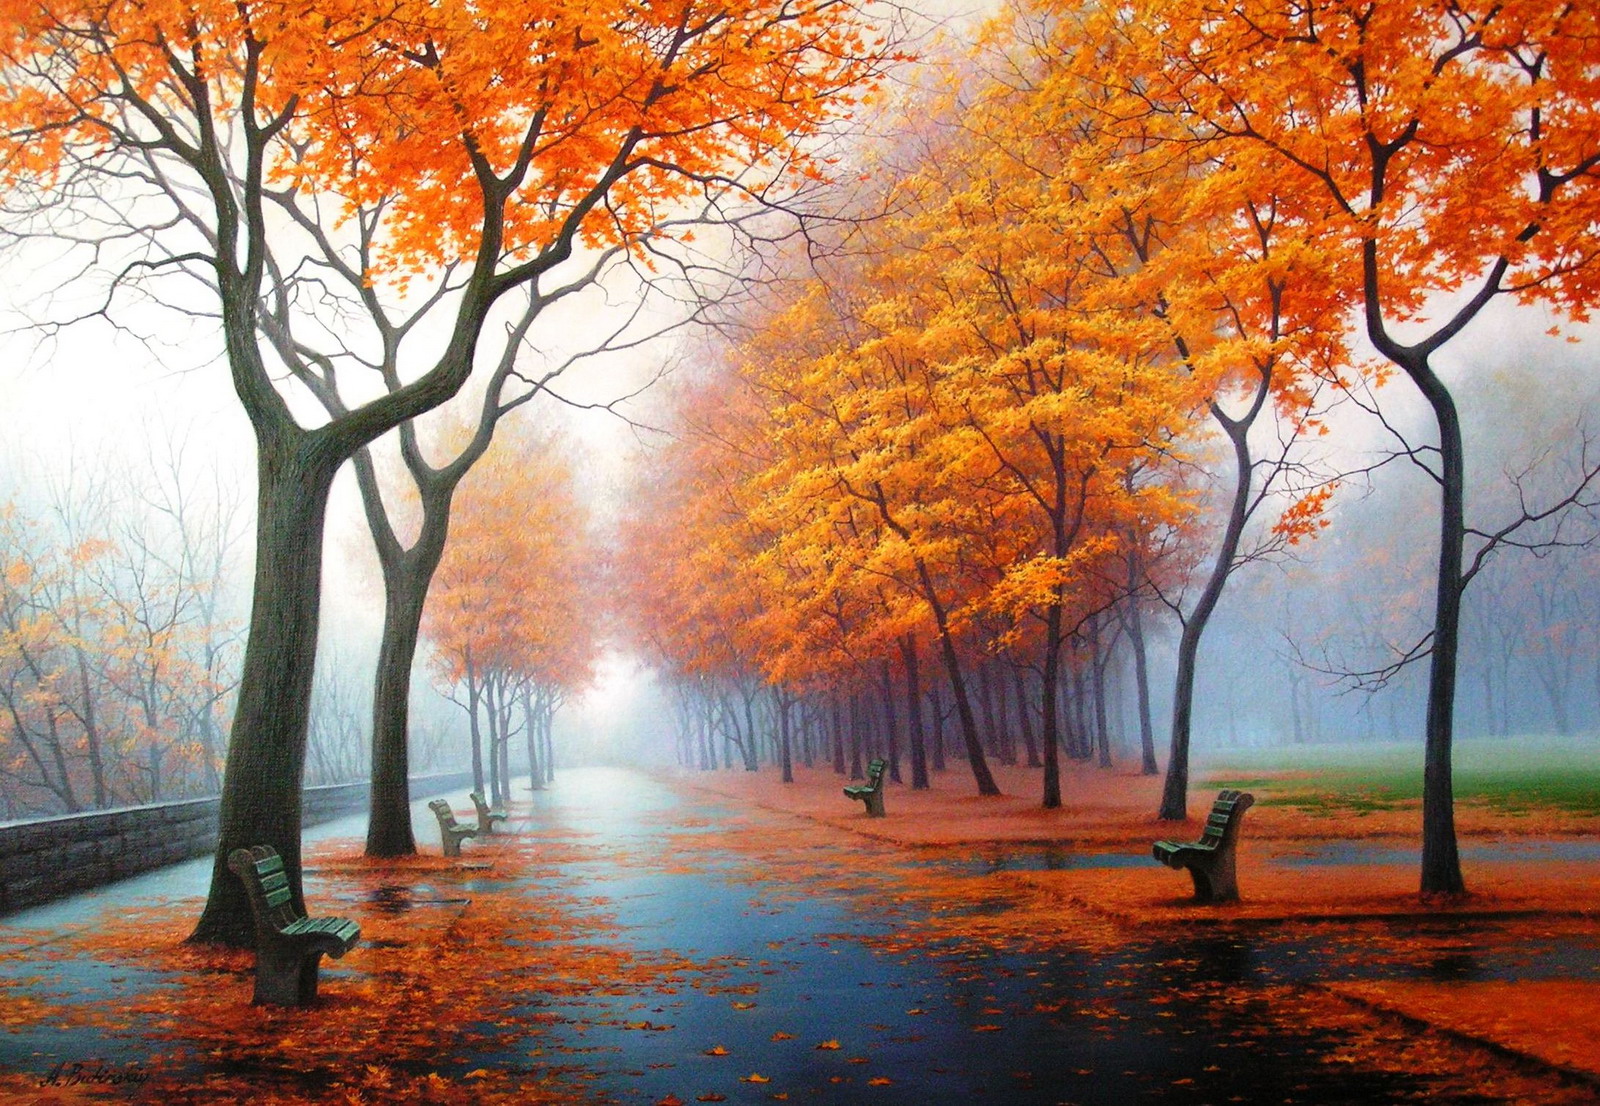 Autumn | Bimages.Net - Free Full HD Desktop Wallpapers, High Definition